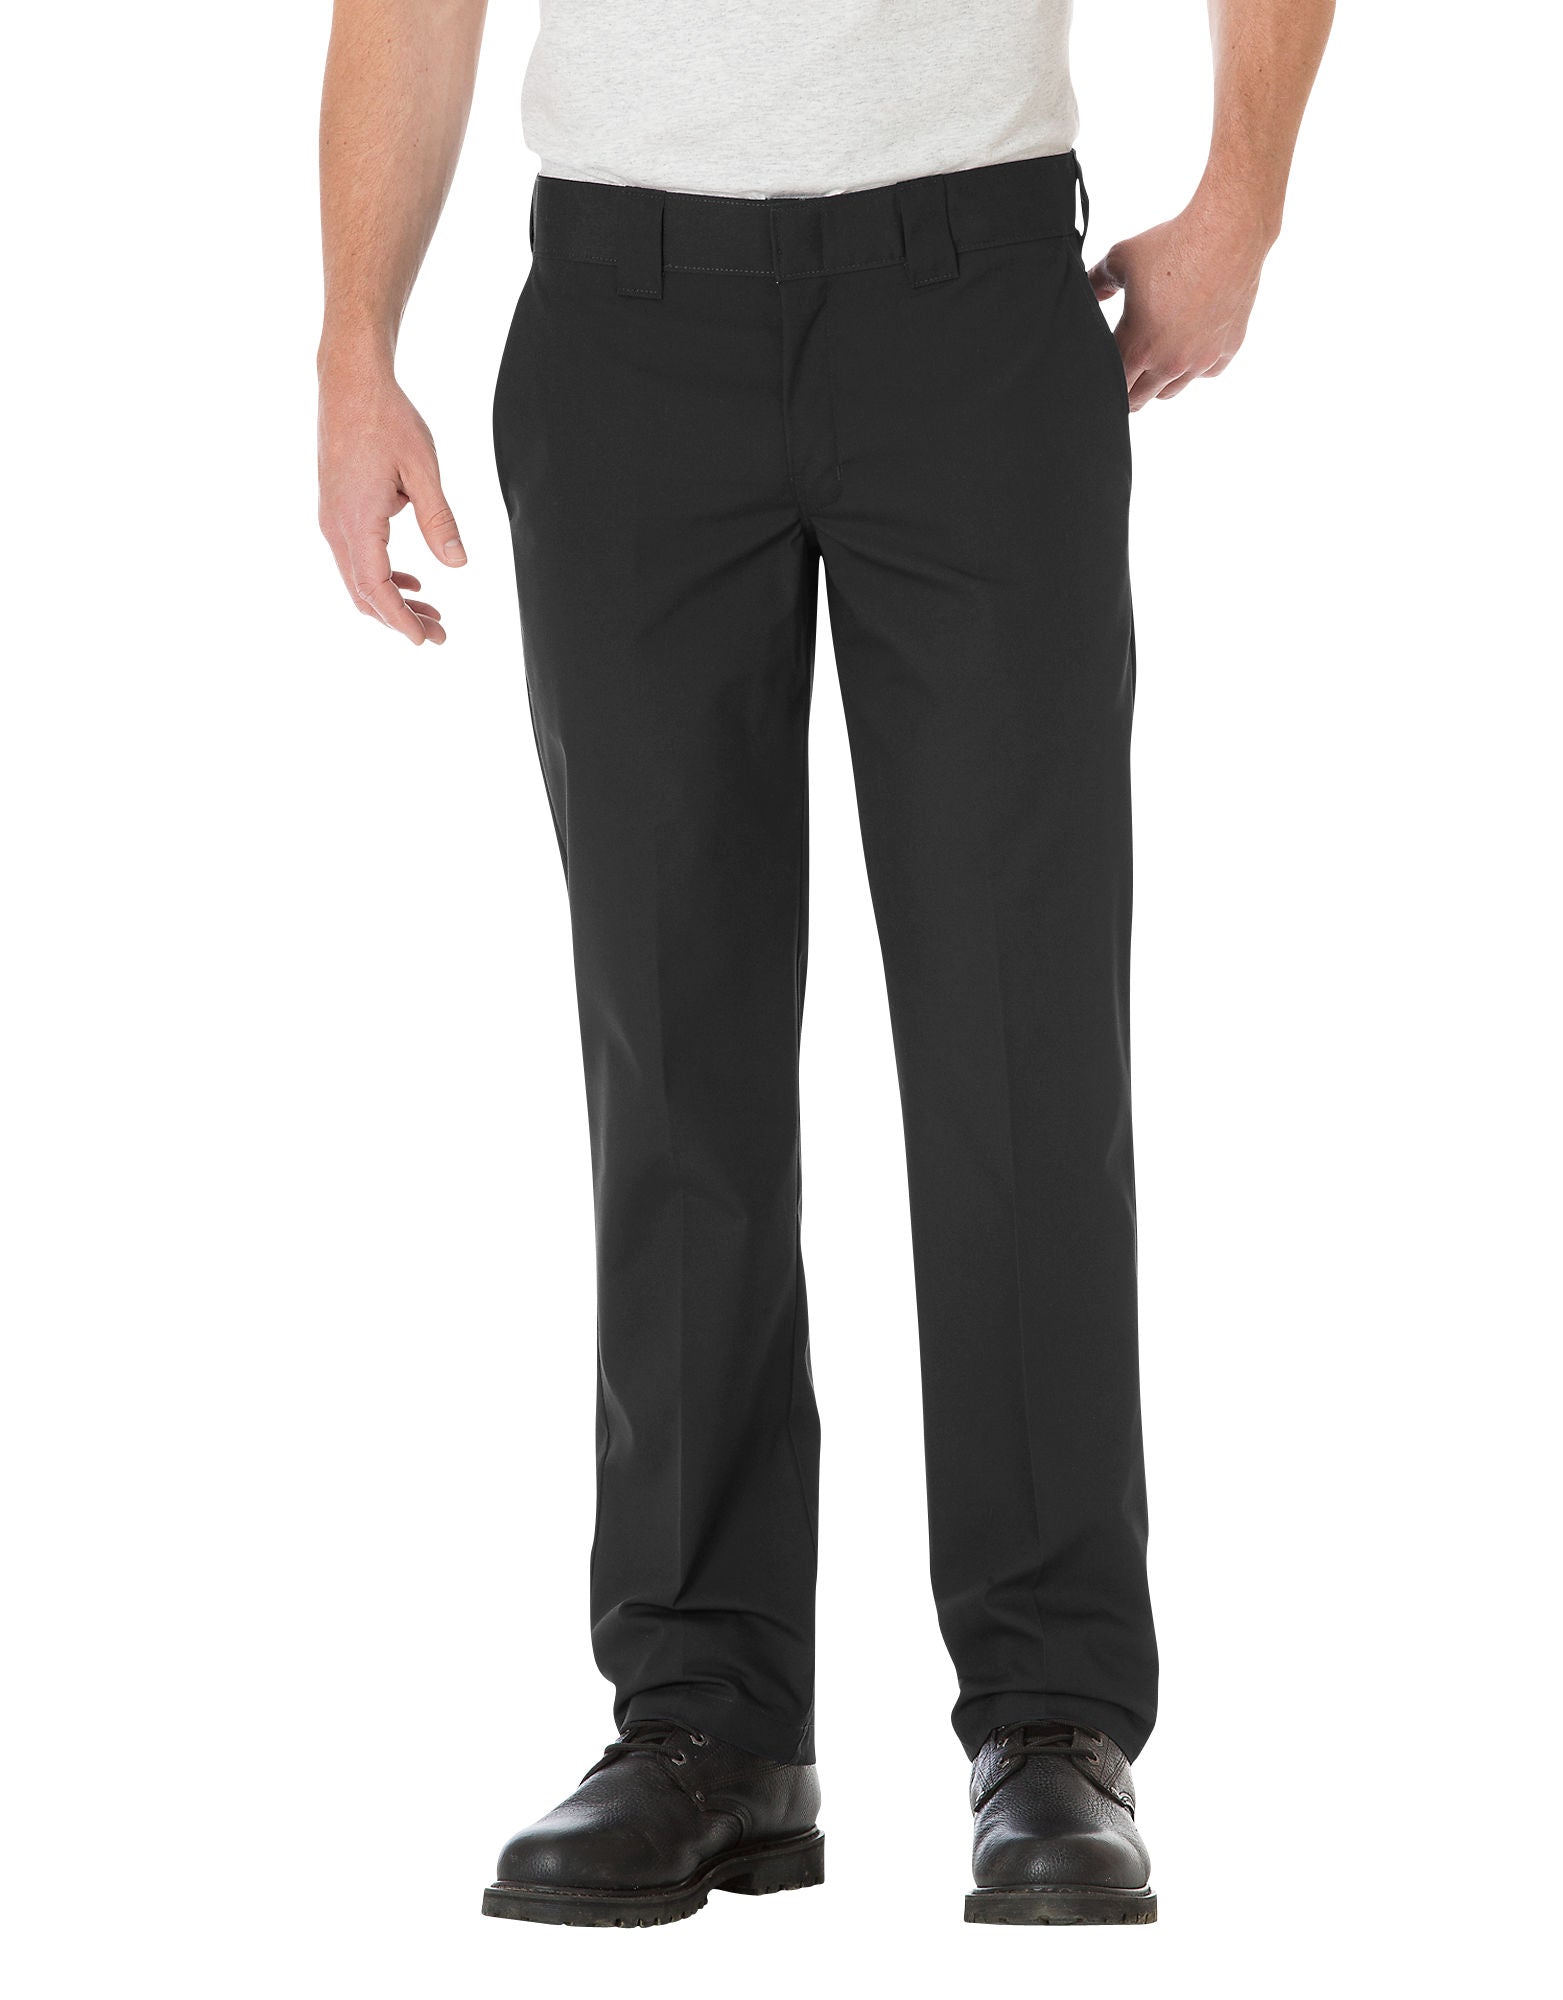 DIC-WP805 - Dickies Mens Slim Straight Fit Poplin Work Pants